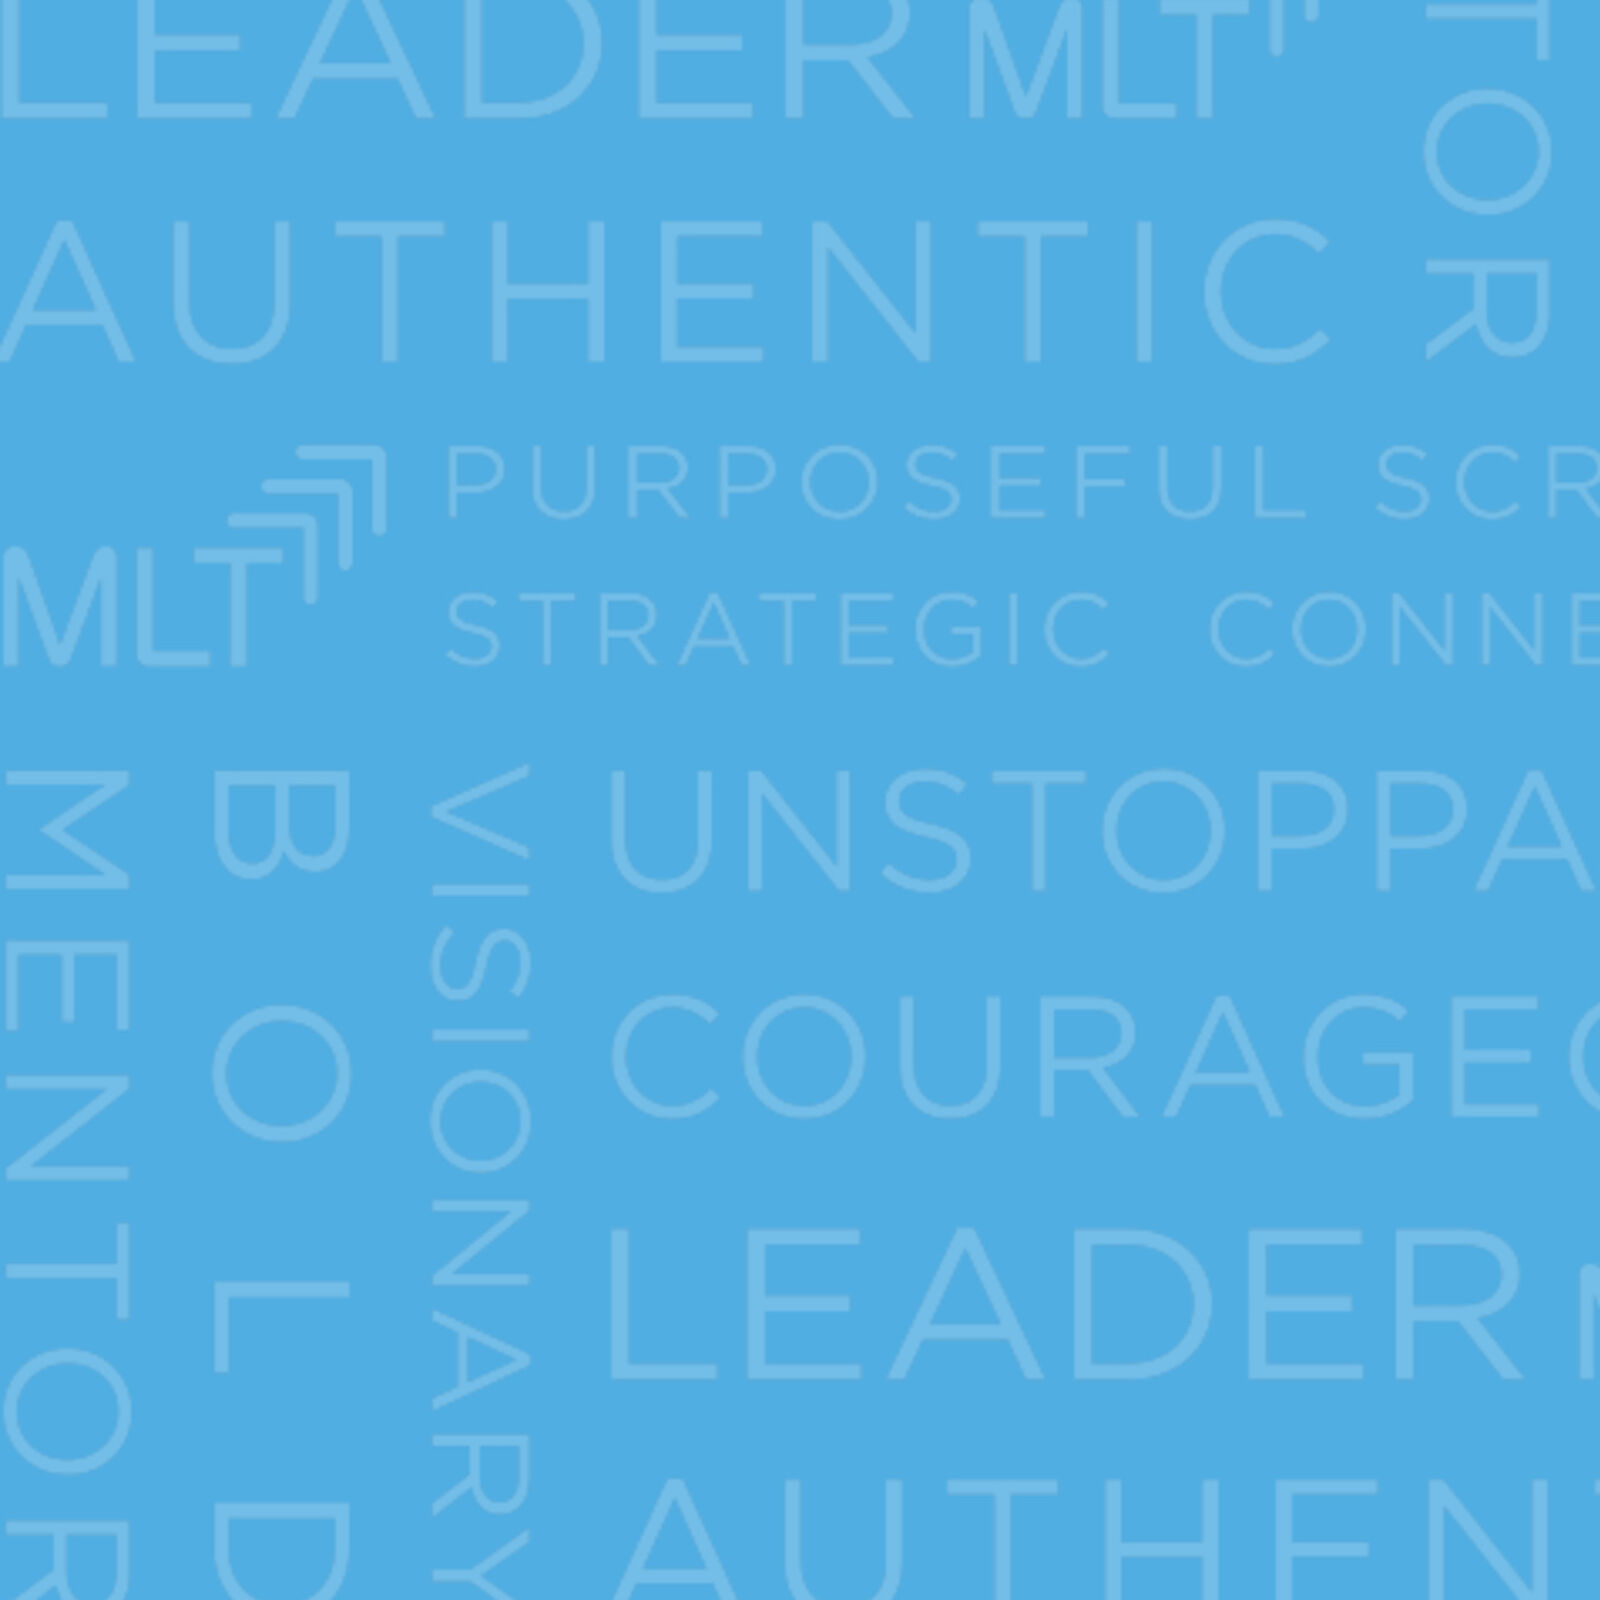 MLT anniversary leadership word cloud